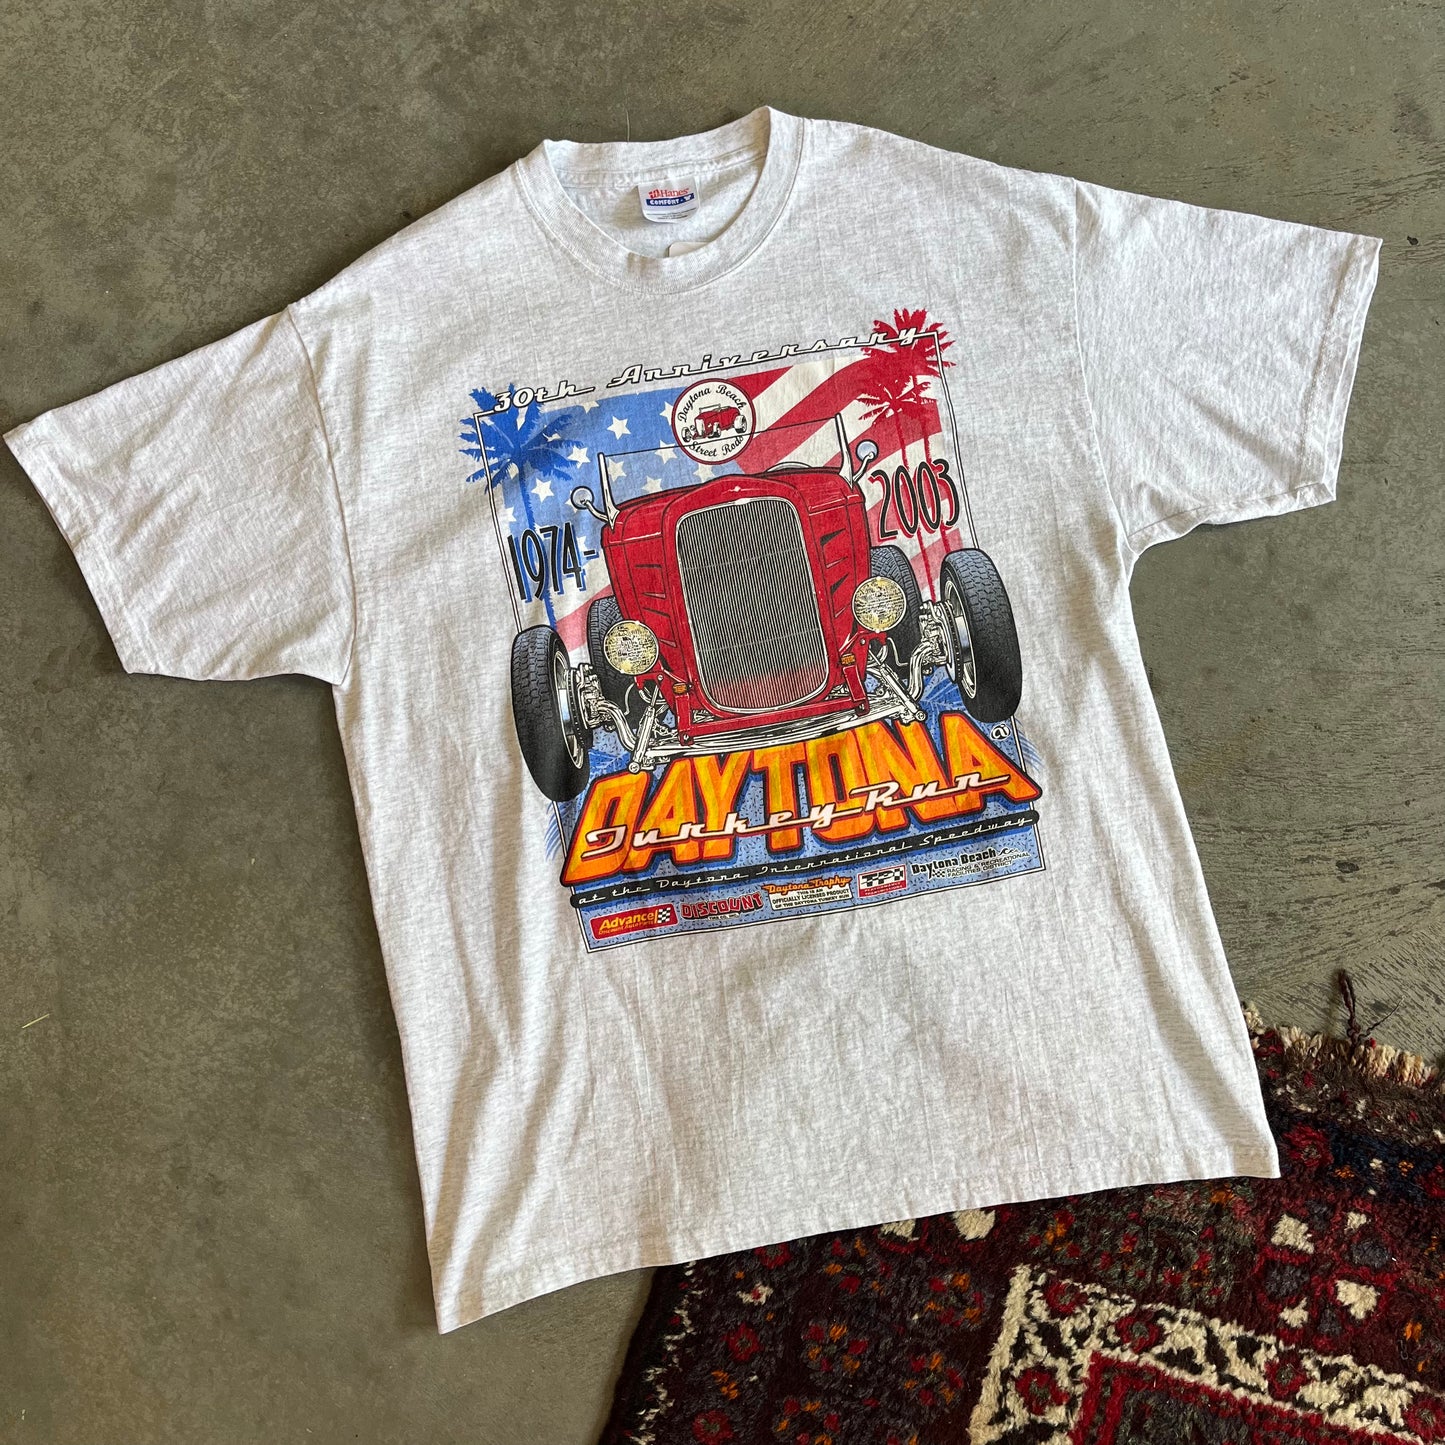 Daytona Turkey Run Shirt - L